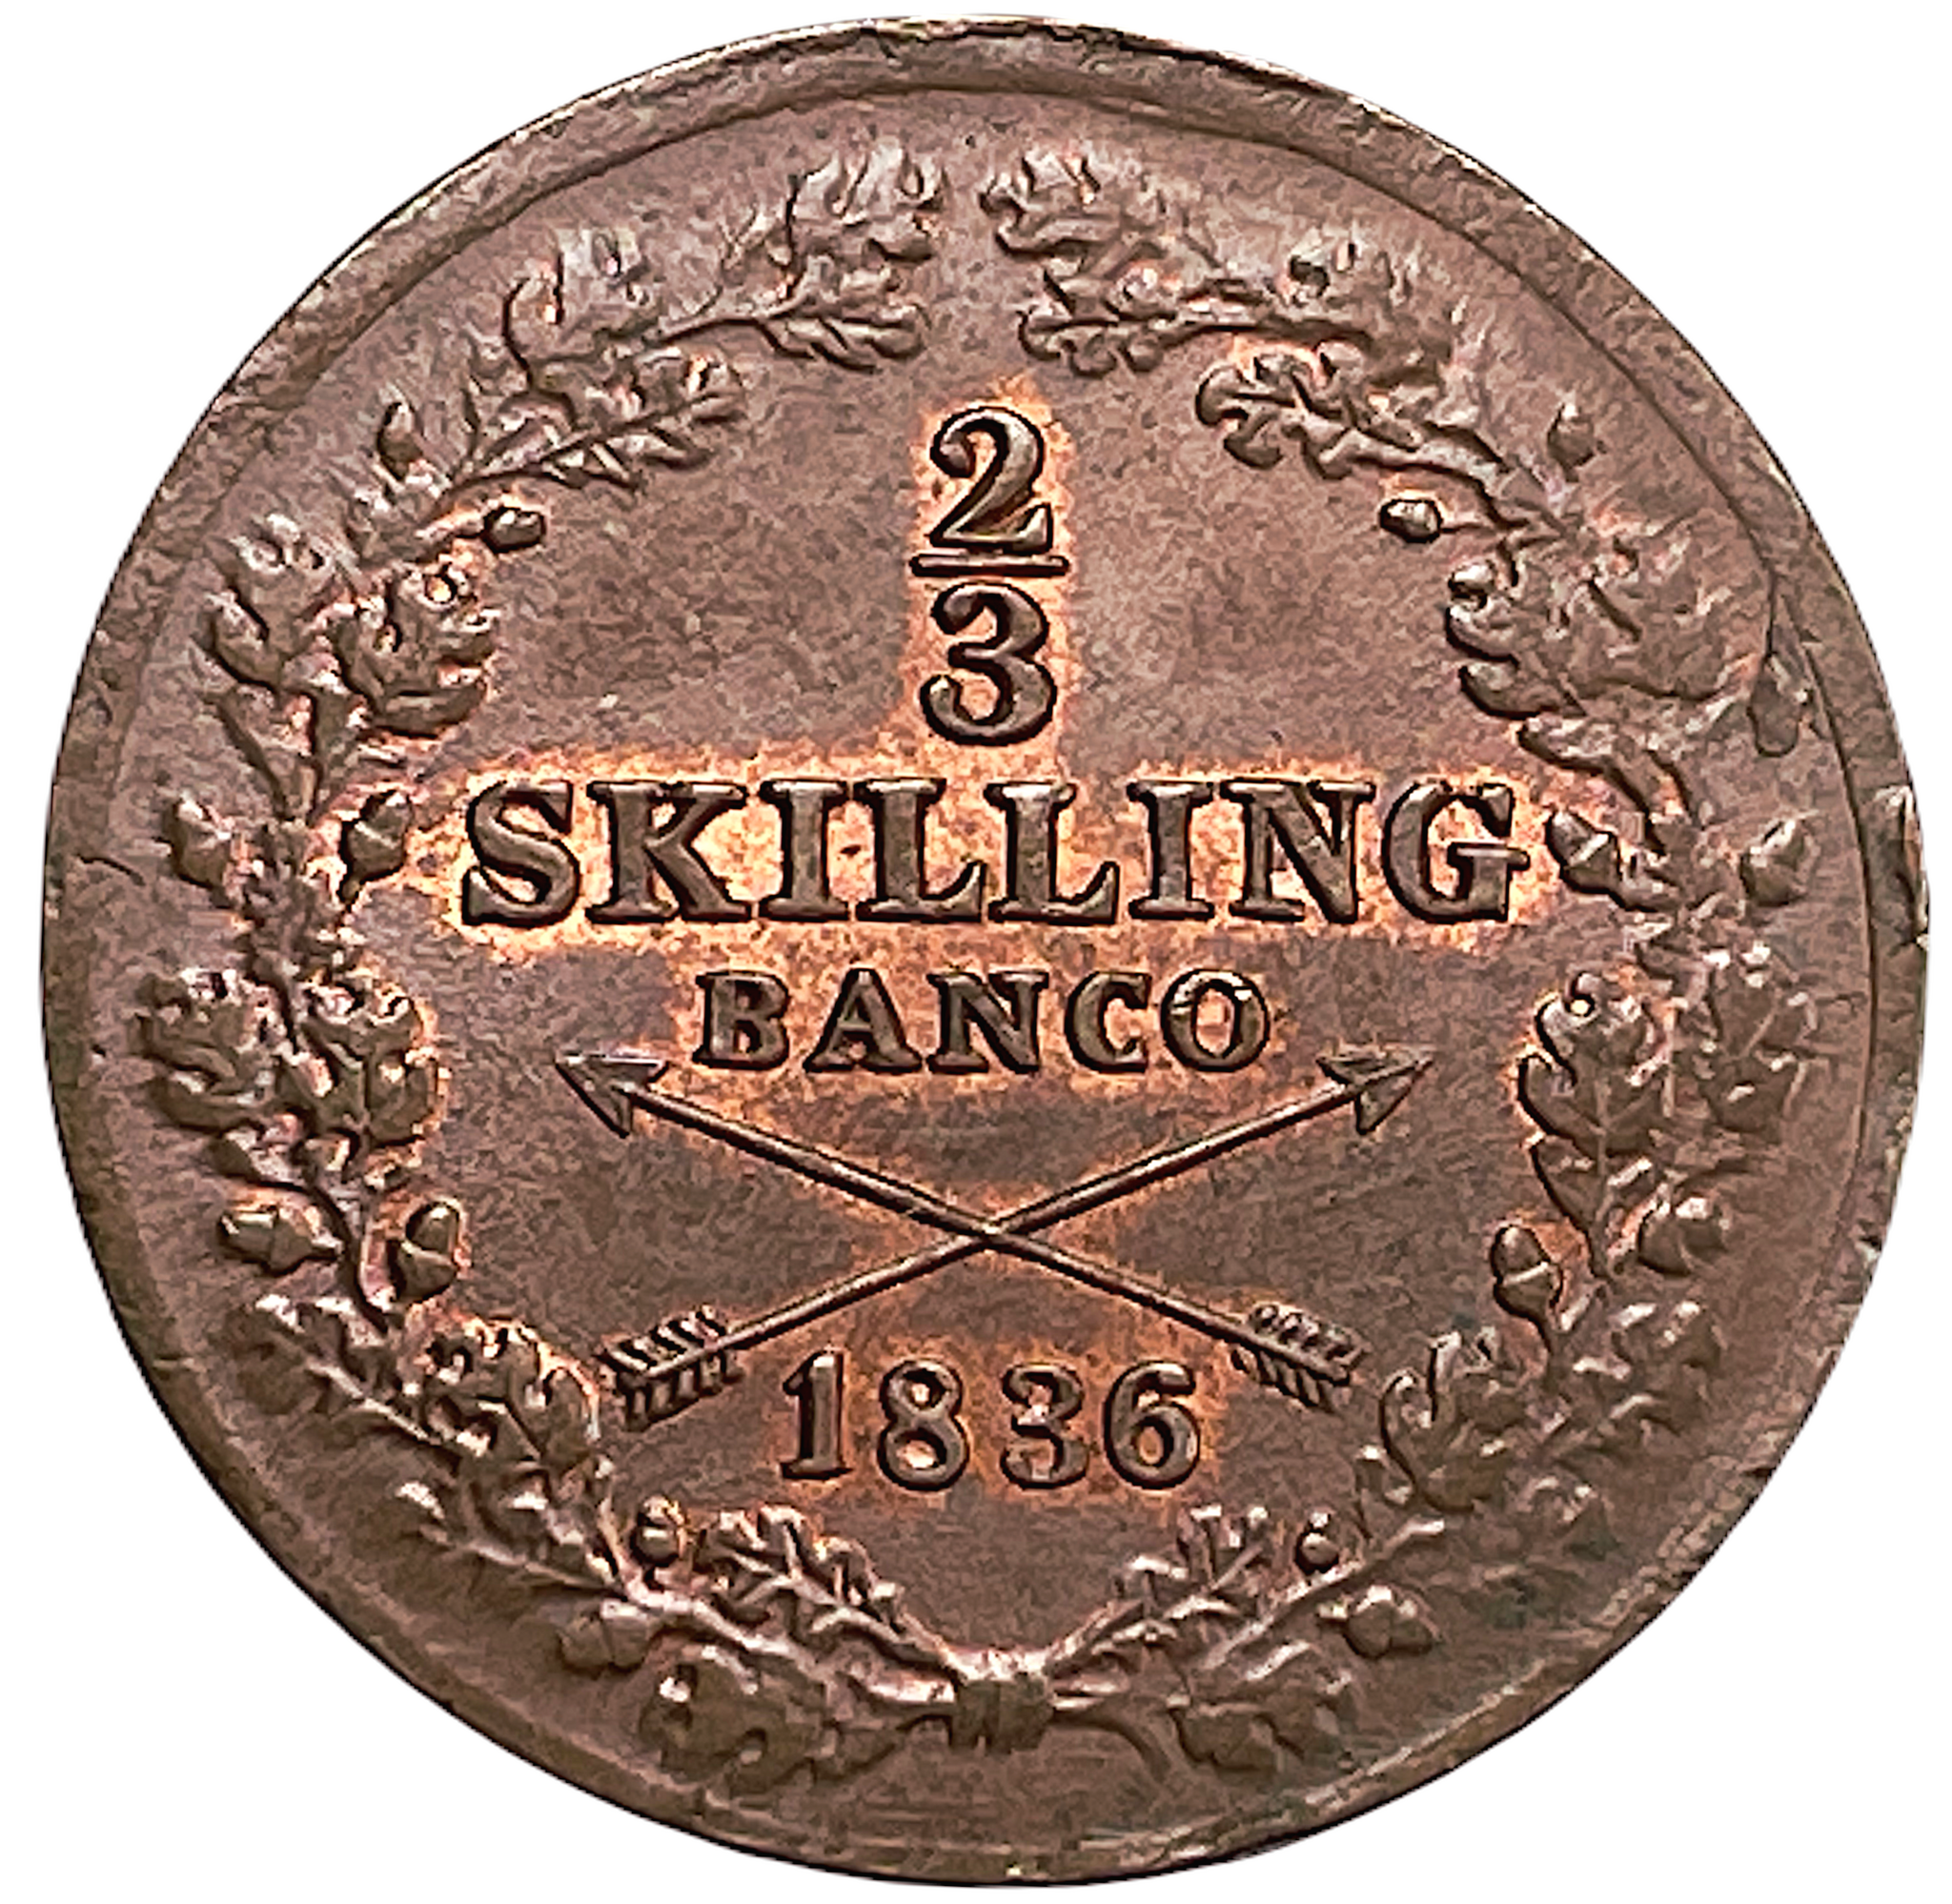 Karl XIV Johan - 2/3 Skilling Banco 1836 - Vackert exemplar